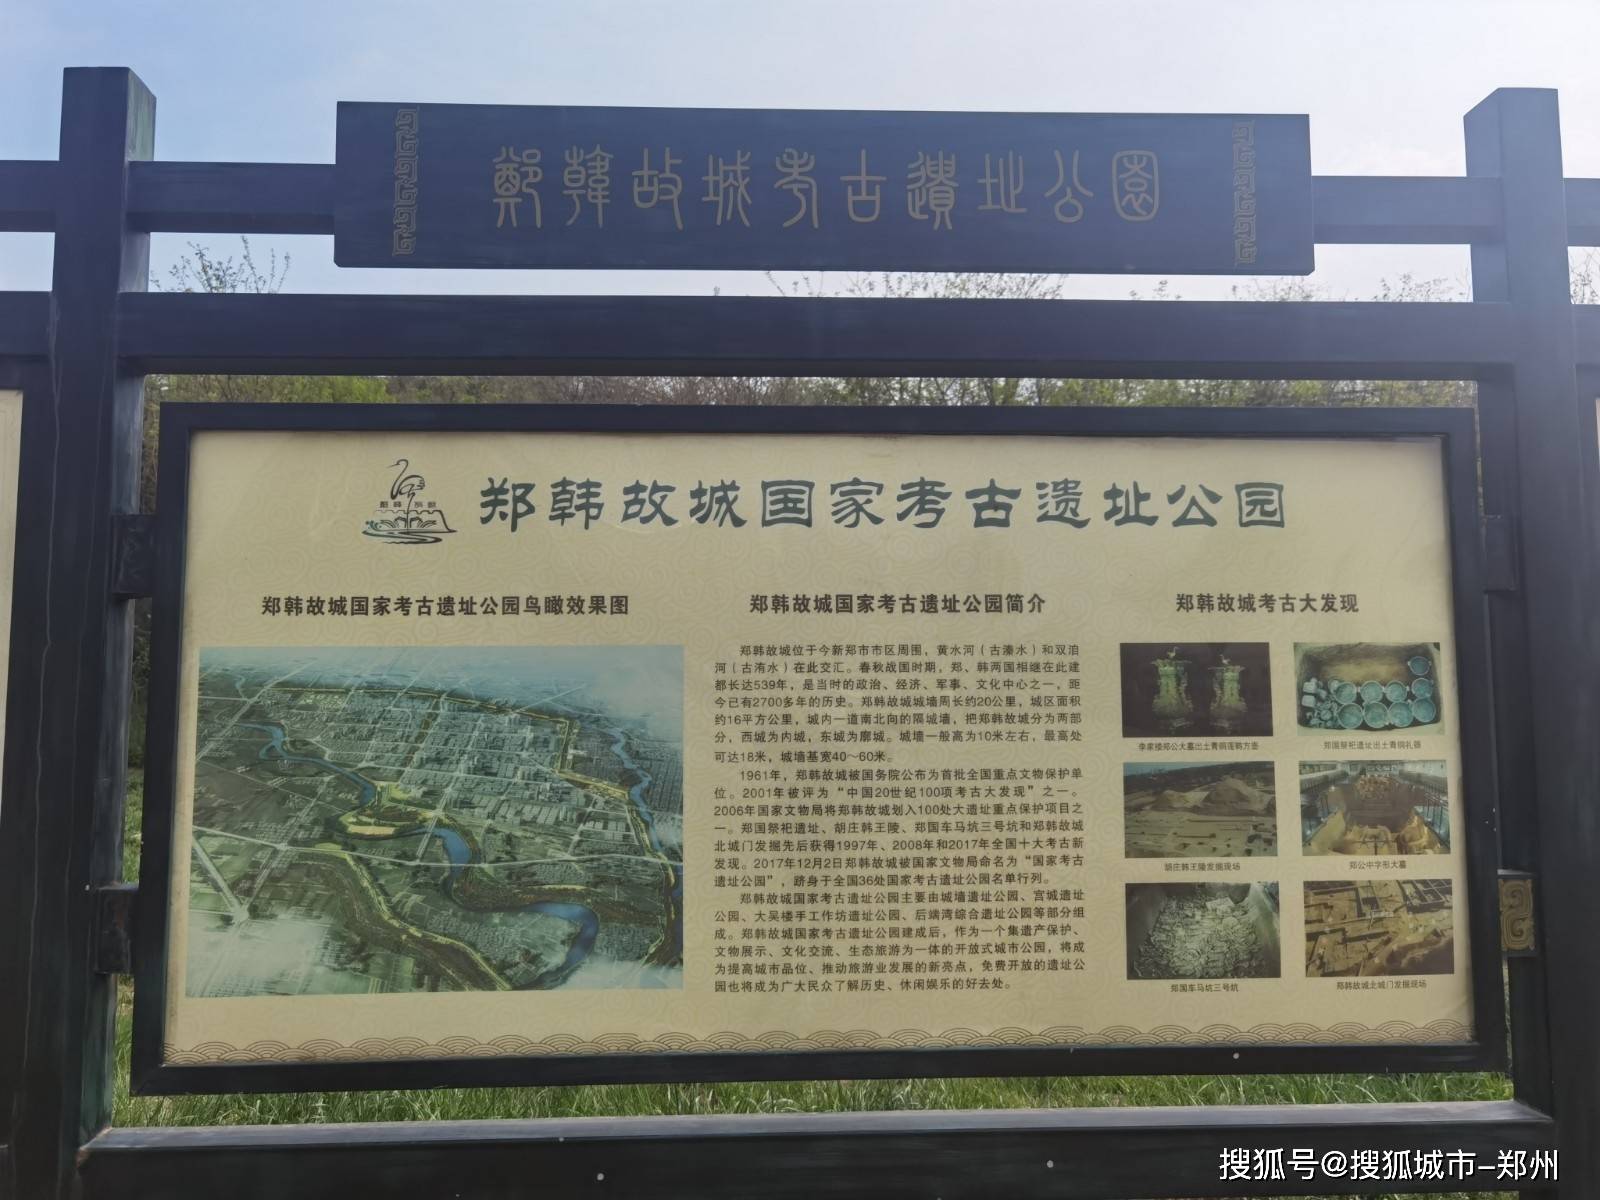 到郑韩故城国家考古遗址公园感受厚重历史吧